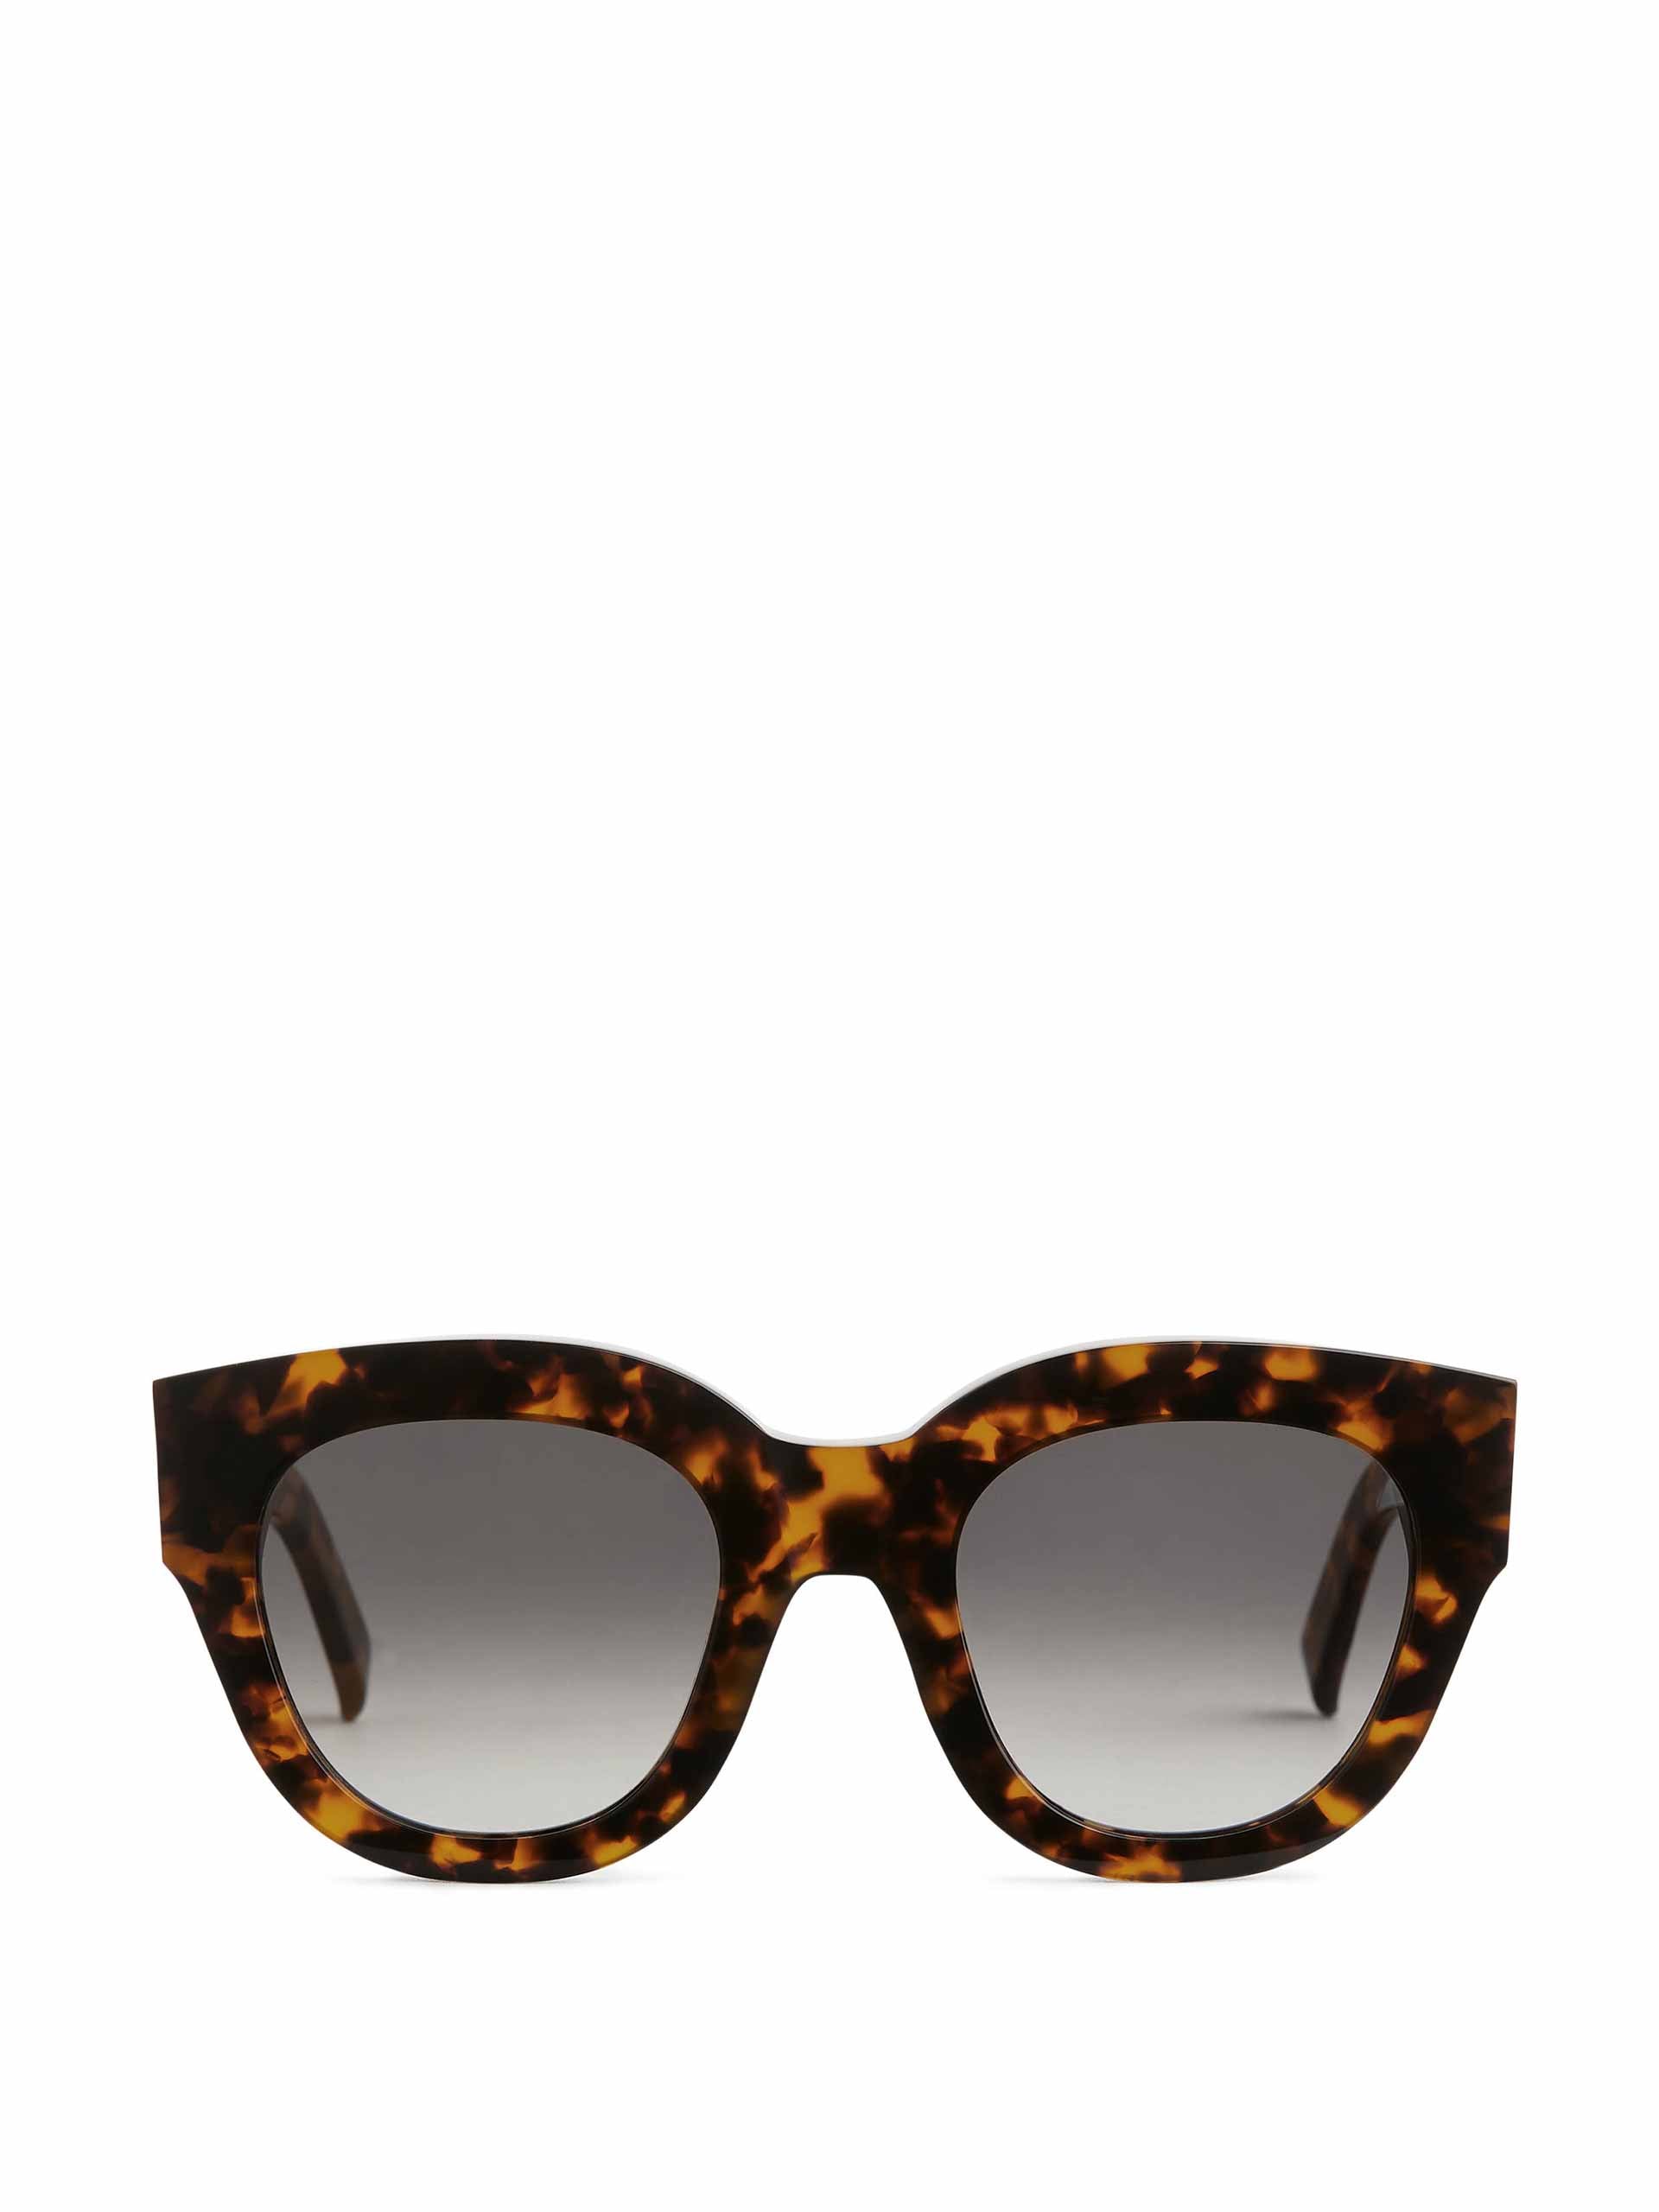 Tortoise cat-eye sunglasses - Collagerie.com